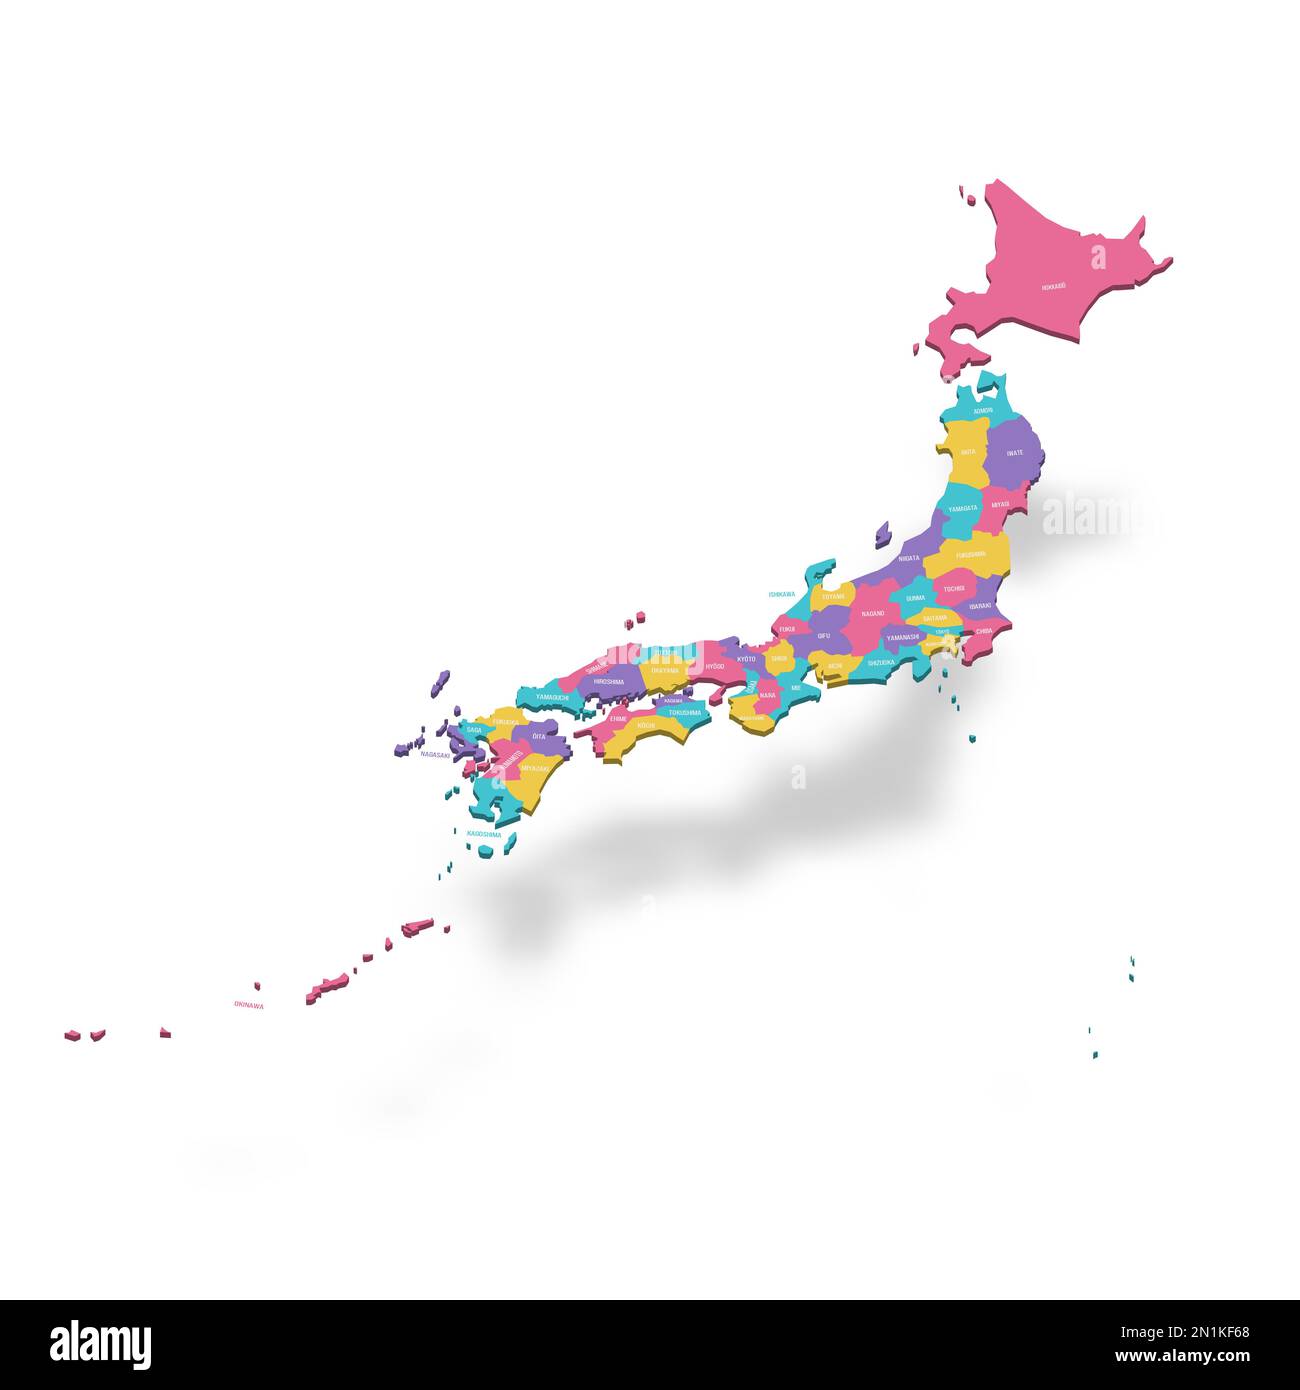 Politische Karte der Verwaltungseinheiten Japans - Präfekturen, Metropilis Tokio, Territorium Hokaido und städtische Präfekturen Kyoto und Osaka. Farbige 3D-Vektorkarte mit Namensbezeichnungen. Stock Vektor